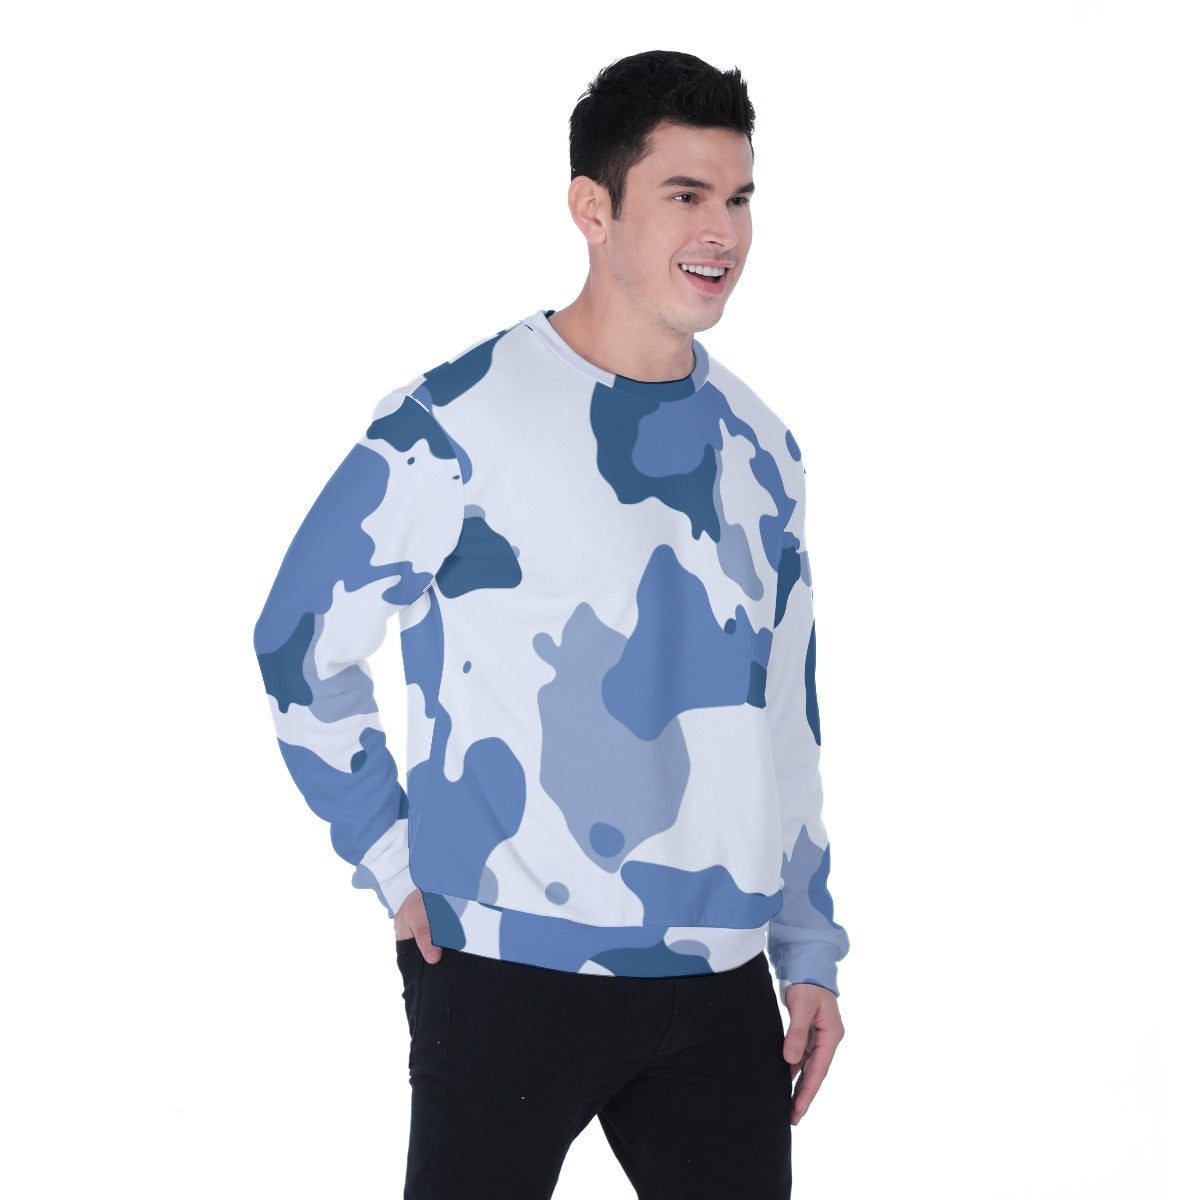 All-Over Print Men's Heavy Fleece Sweatshirt